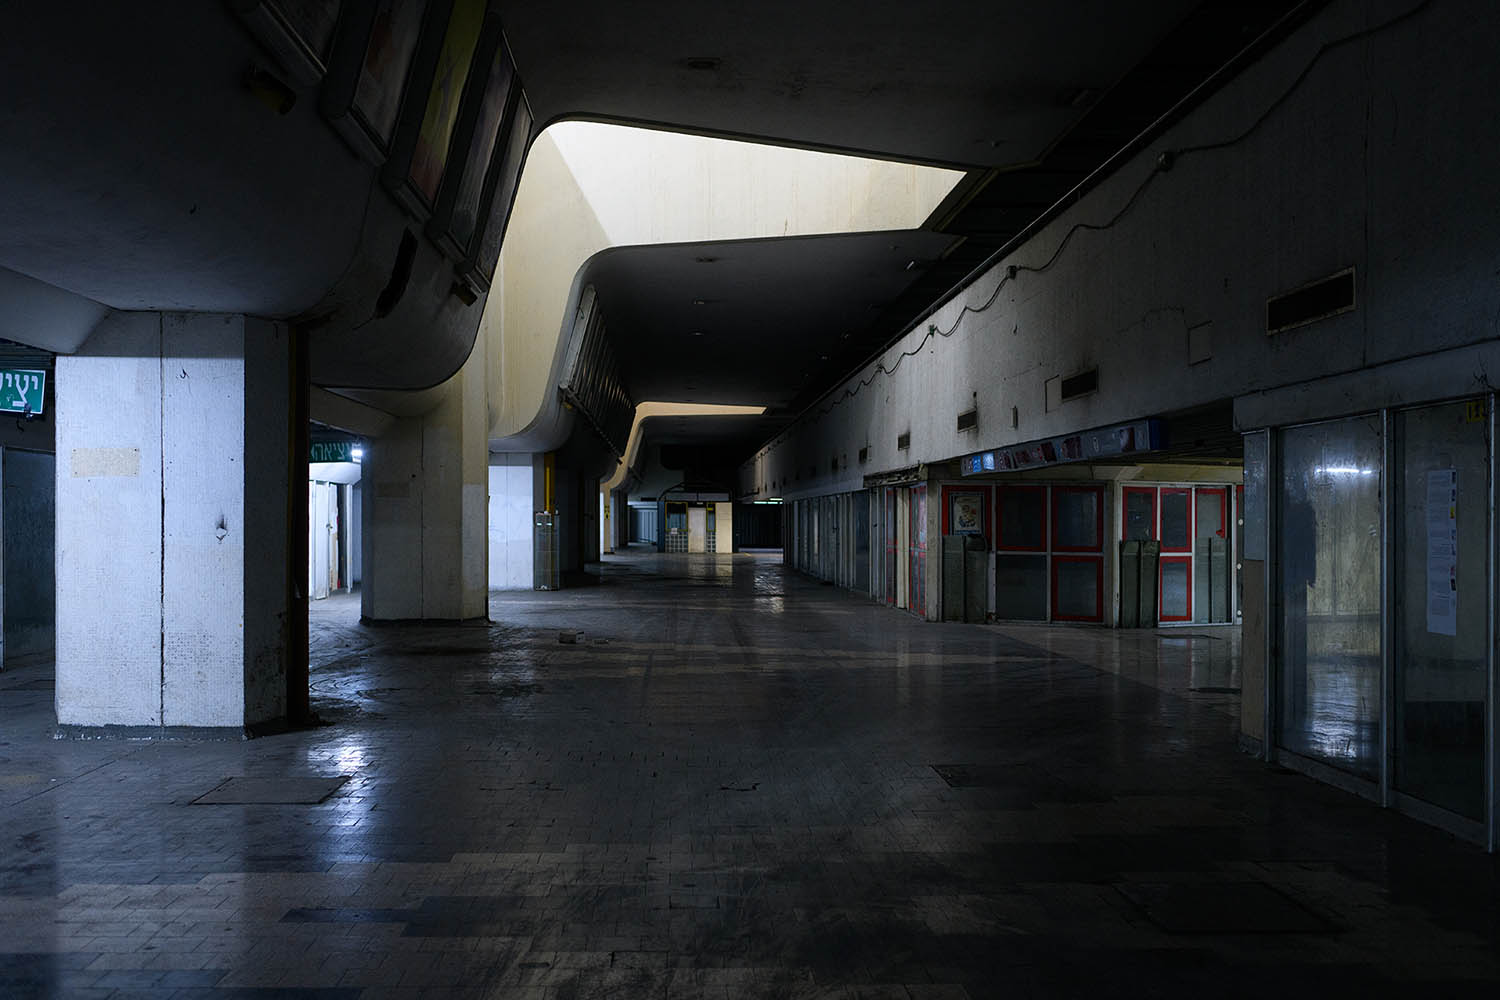 התחנה המרכזית בדרך לפינוי. קומה 1. מסדרונות ריקים ובתי קולנוע נטושים (צילום: יונתן בלום)